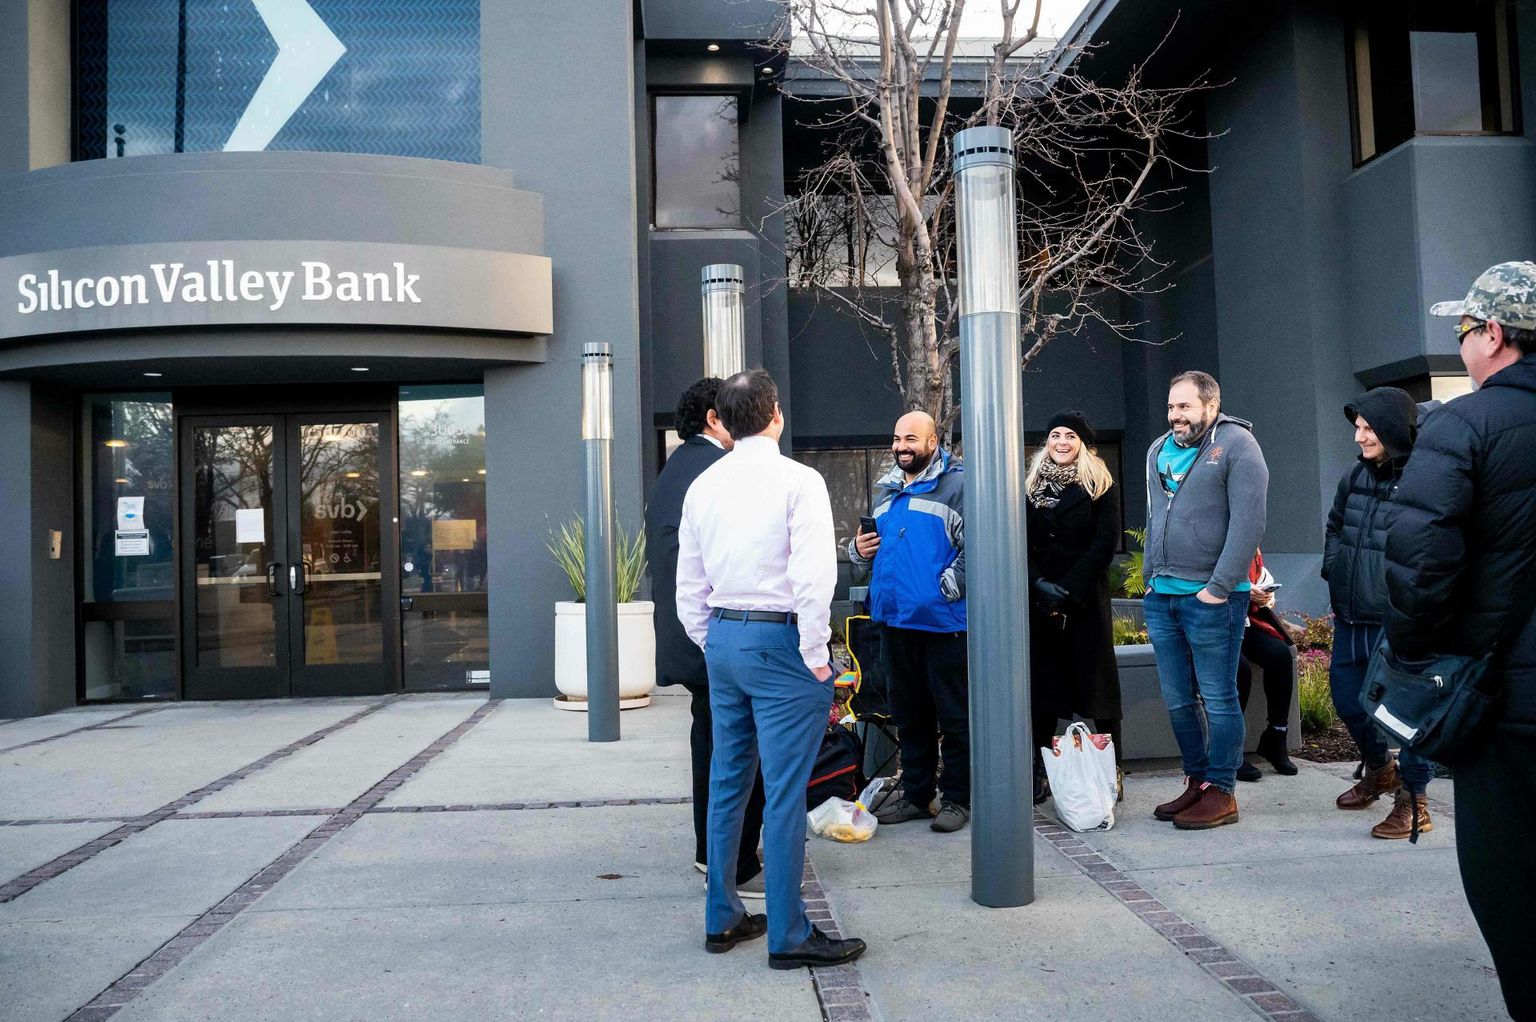 Viimane pangakriis algas Silicon Valley Banki pangajooksuga. Fotol kuulavad panga kliendid föderaalse hoiuste kaitsmise  korporatsiooni esindajat olukorda selgitamas.